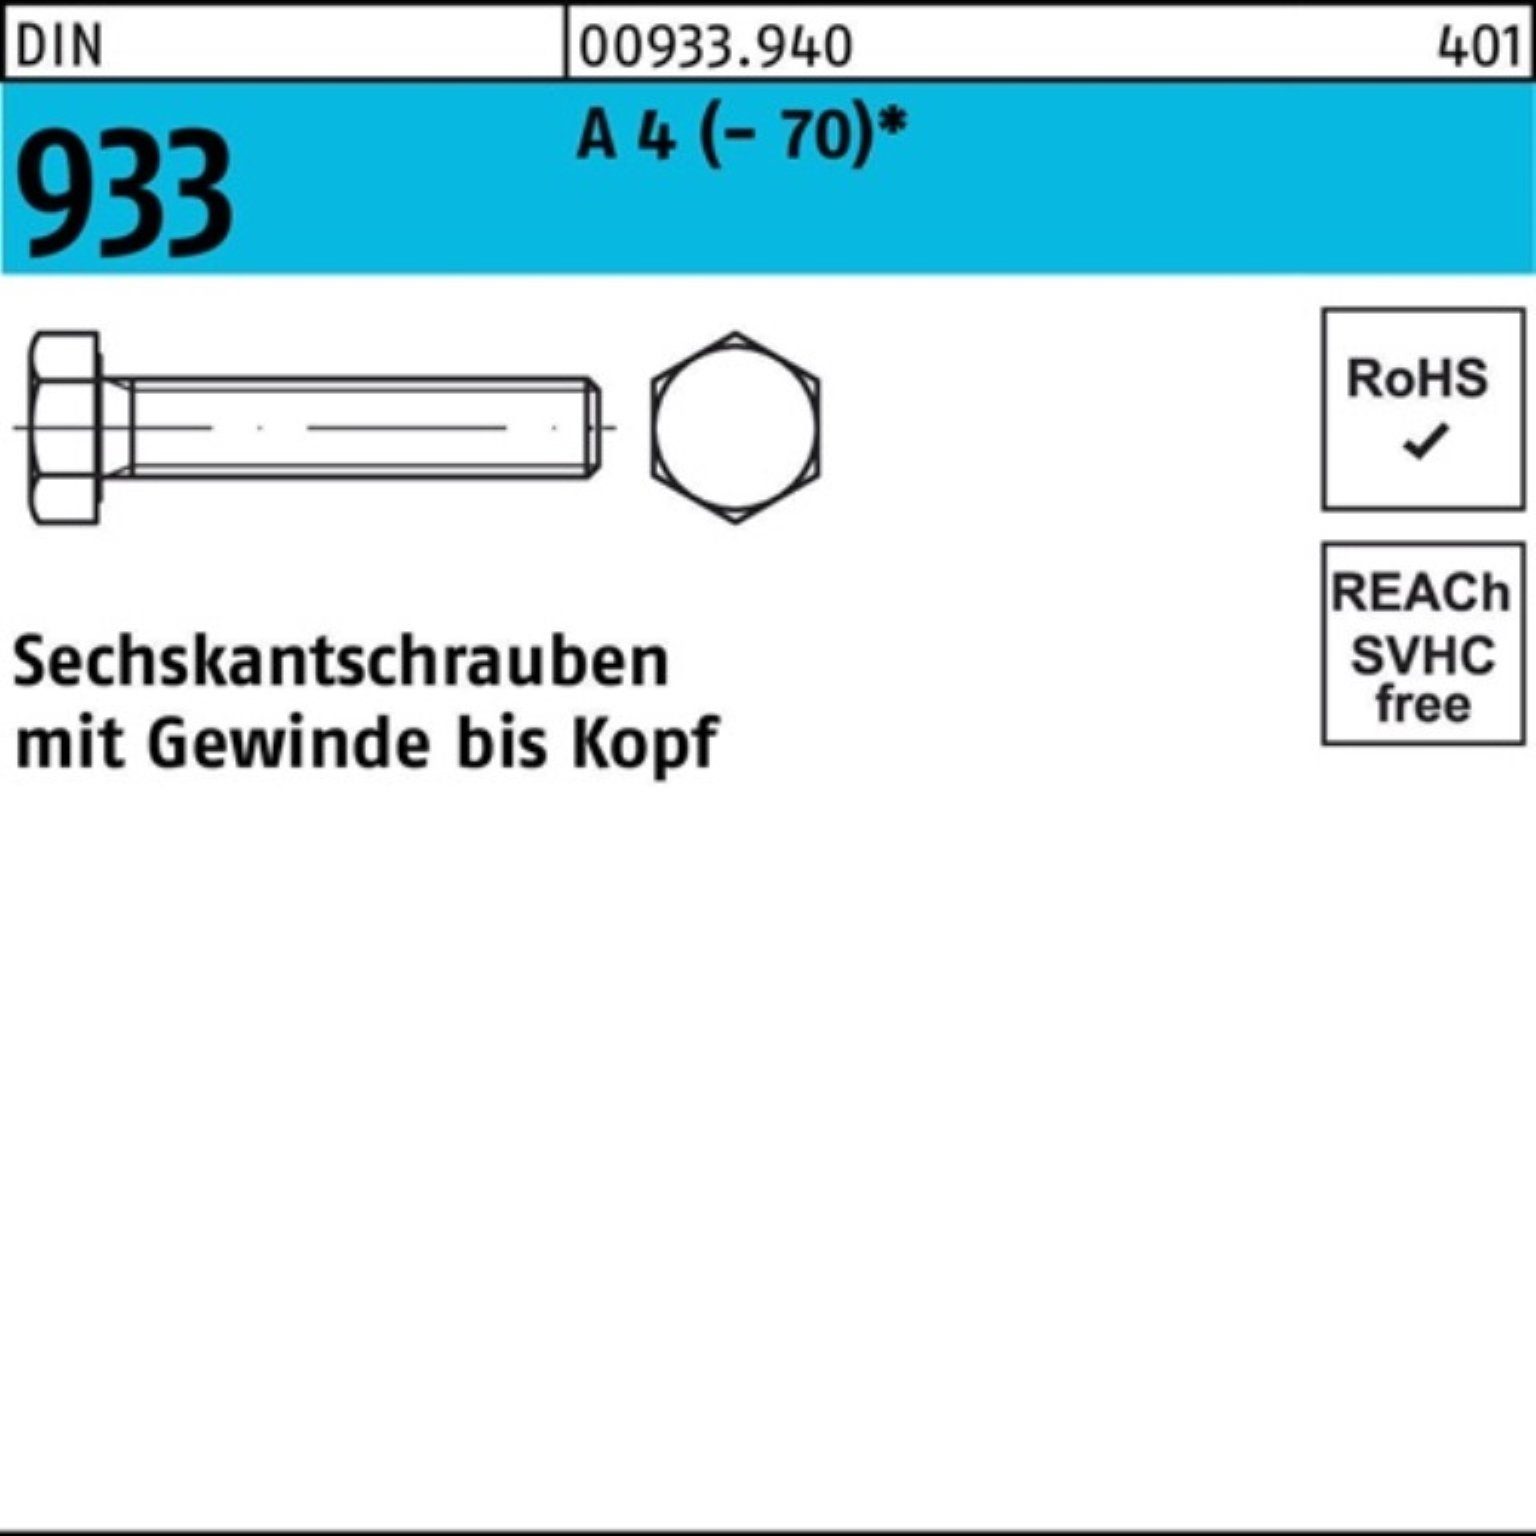 Reyher Sechskantschraube 100er DIN A Sechskantschraube M24x (70) 933 DI VG Stück 40 Pack 1 4